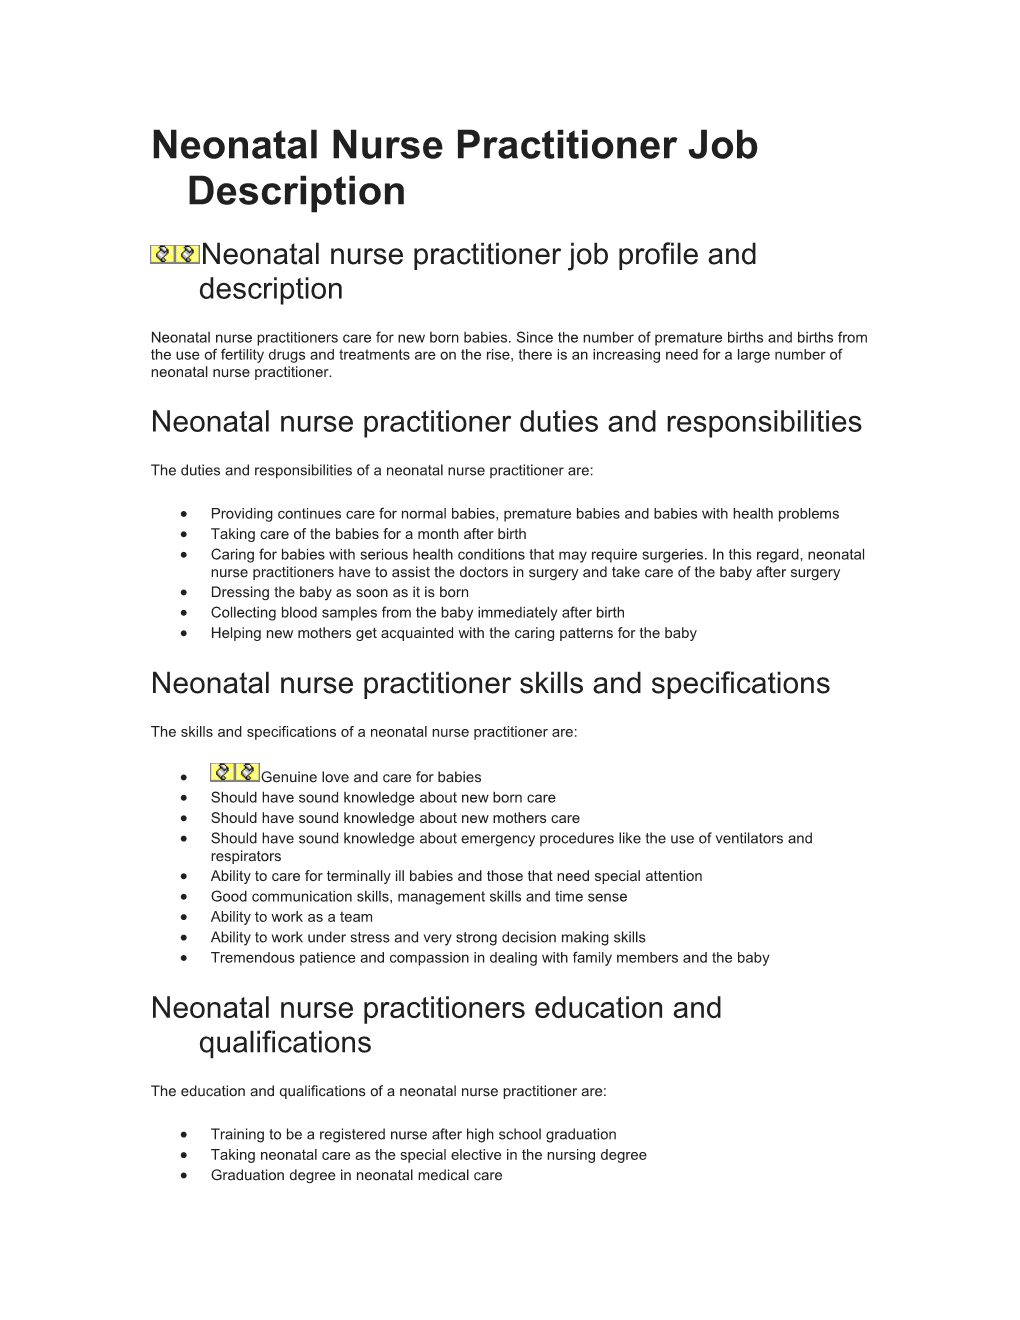 Neonatal Nurse Practitioner Job Description